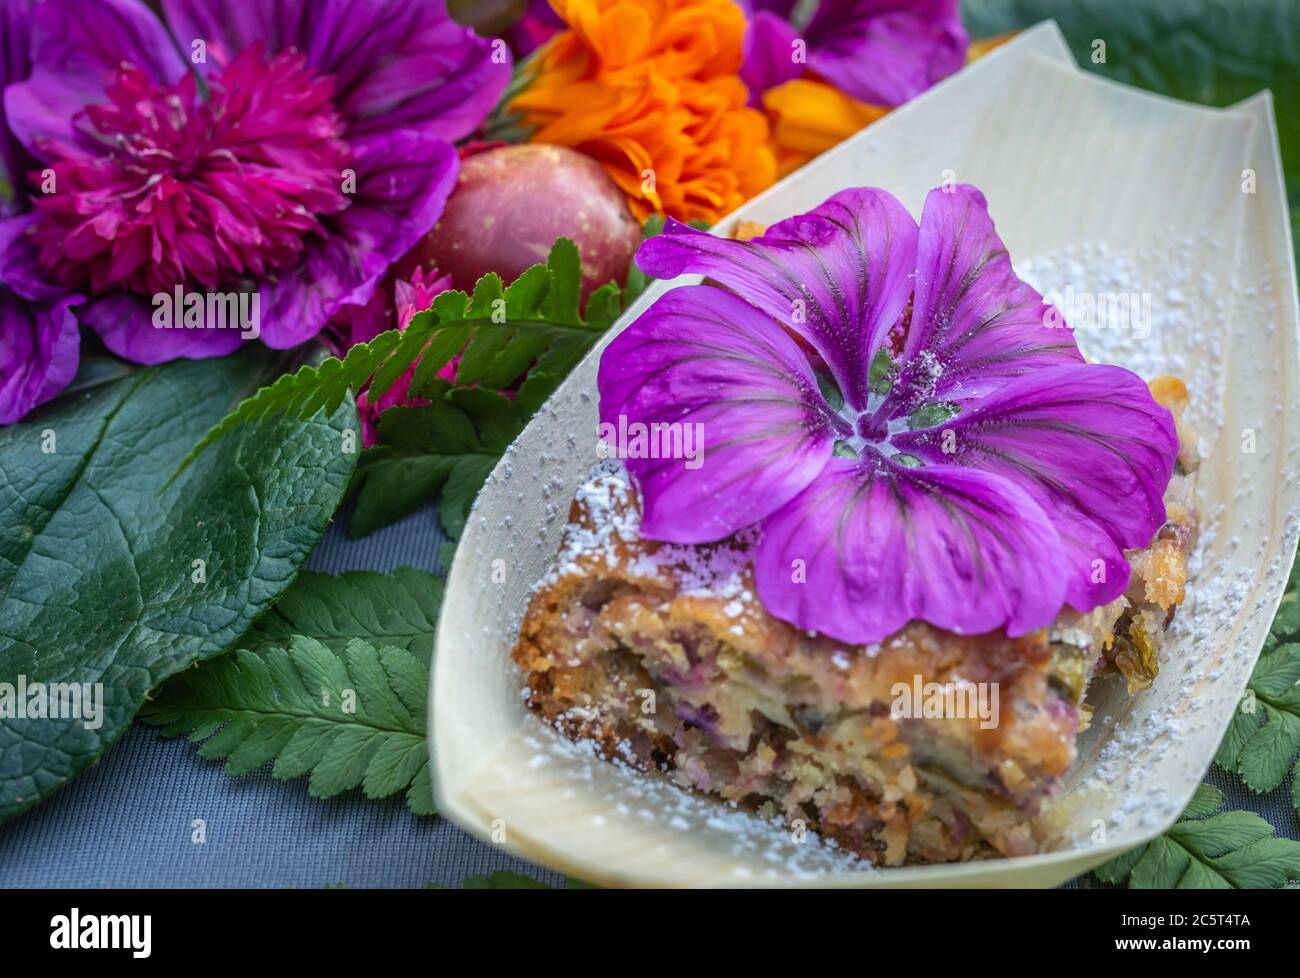 Süß mit Malbe und Mandeln.Teller mit Malwee Blumen verziert. Blumenfutter Konzept. Essbare Sommerblumen Stockfoto